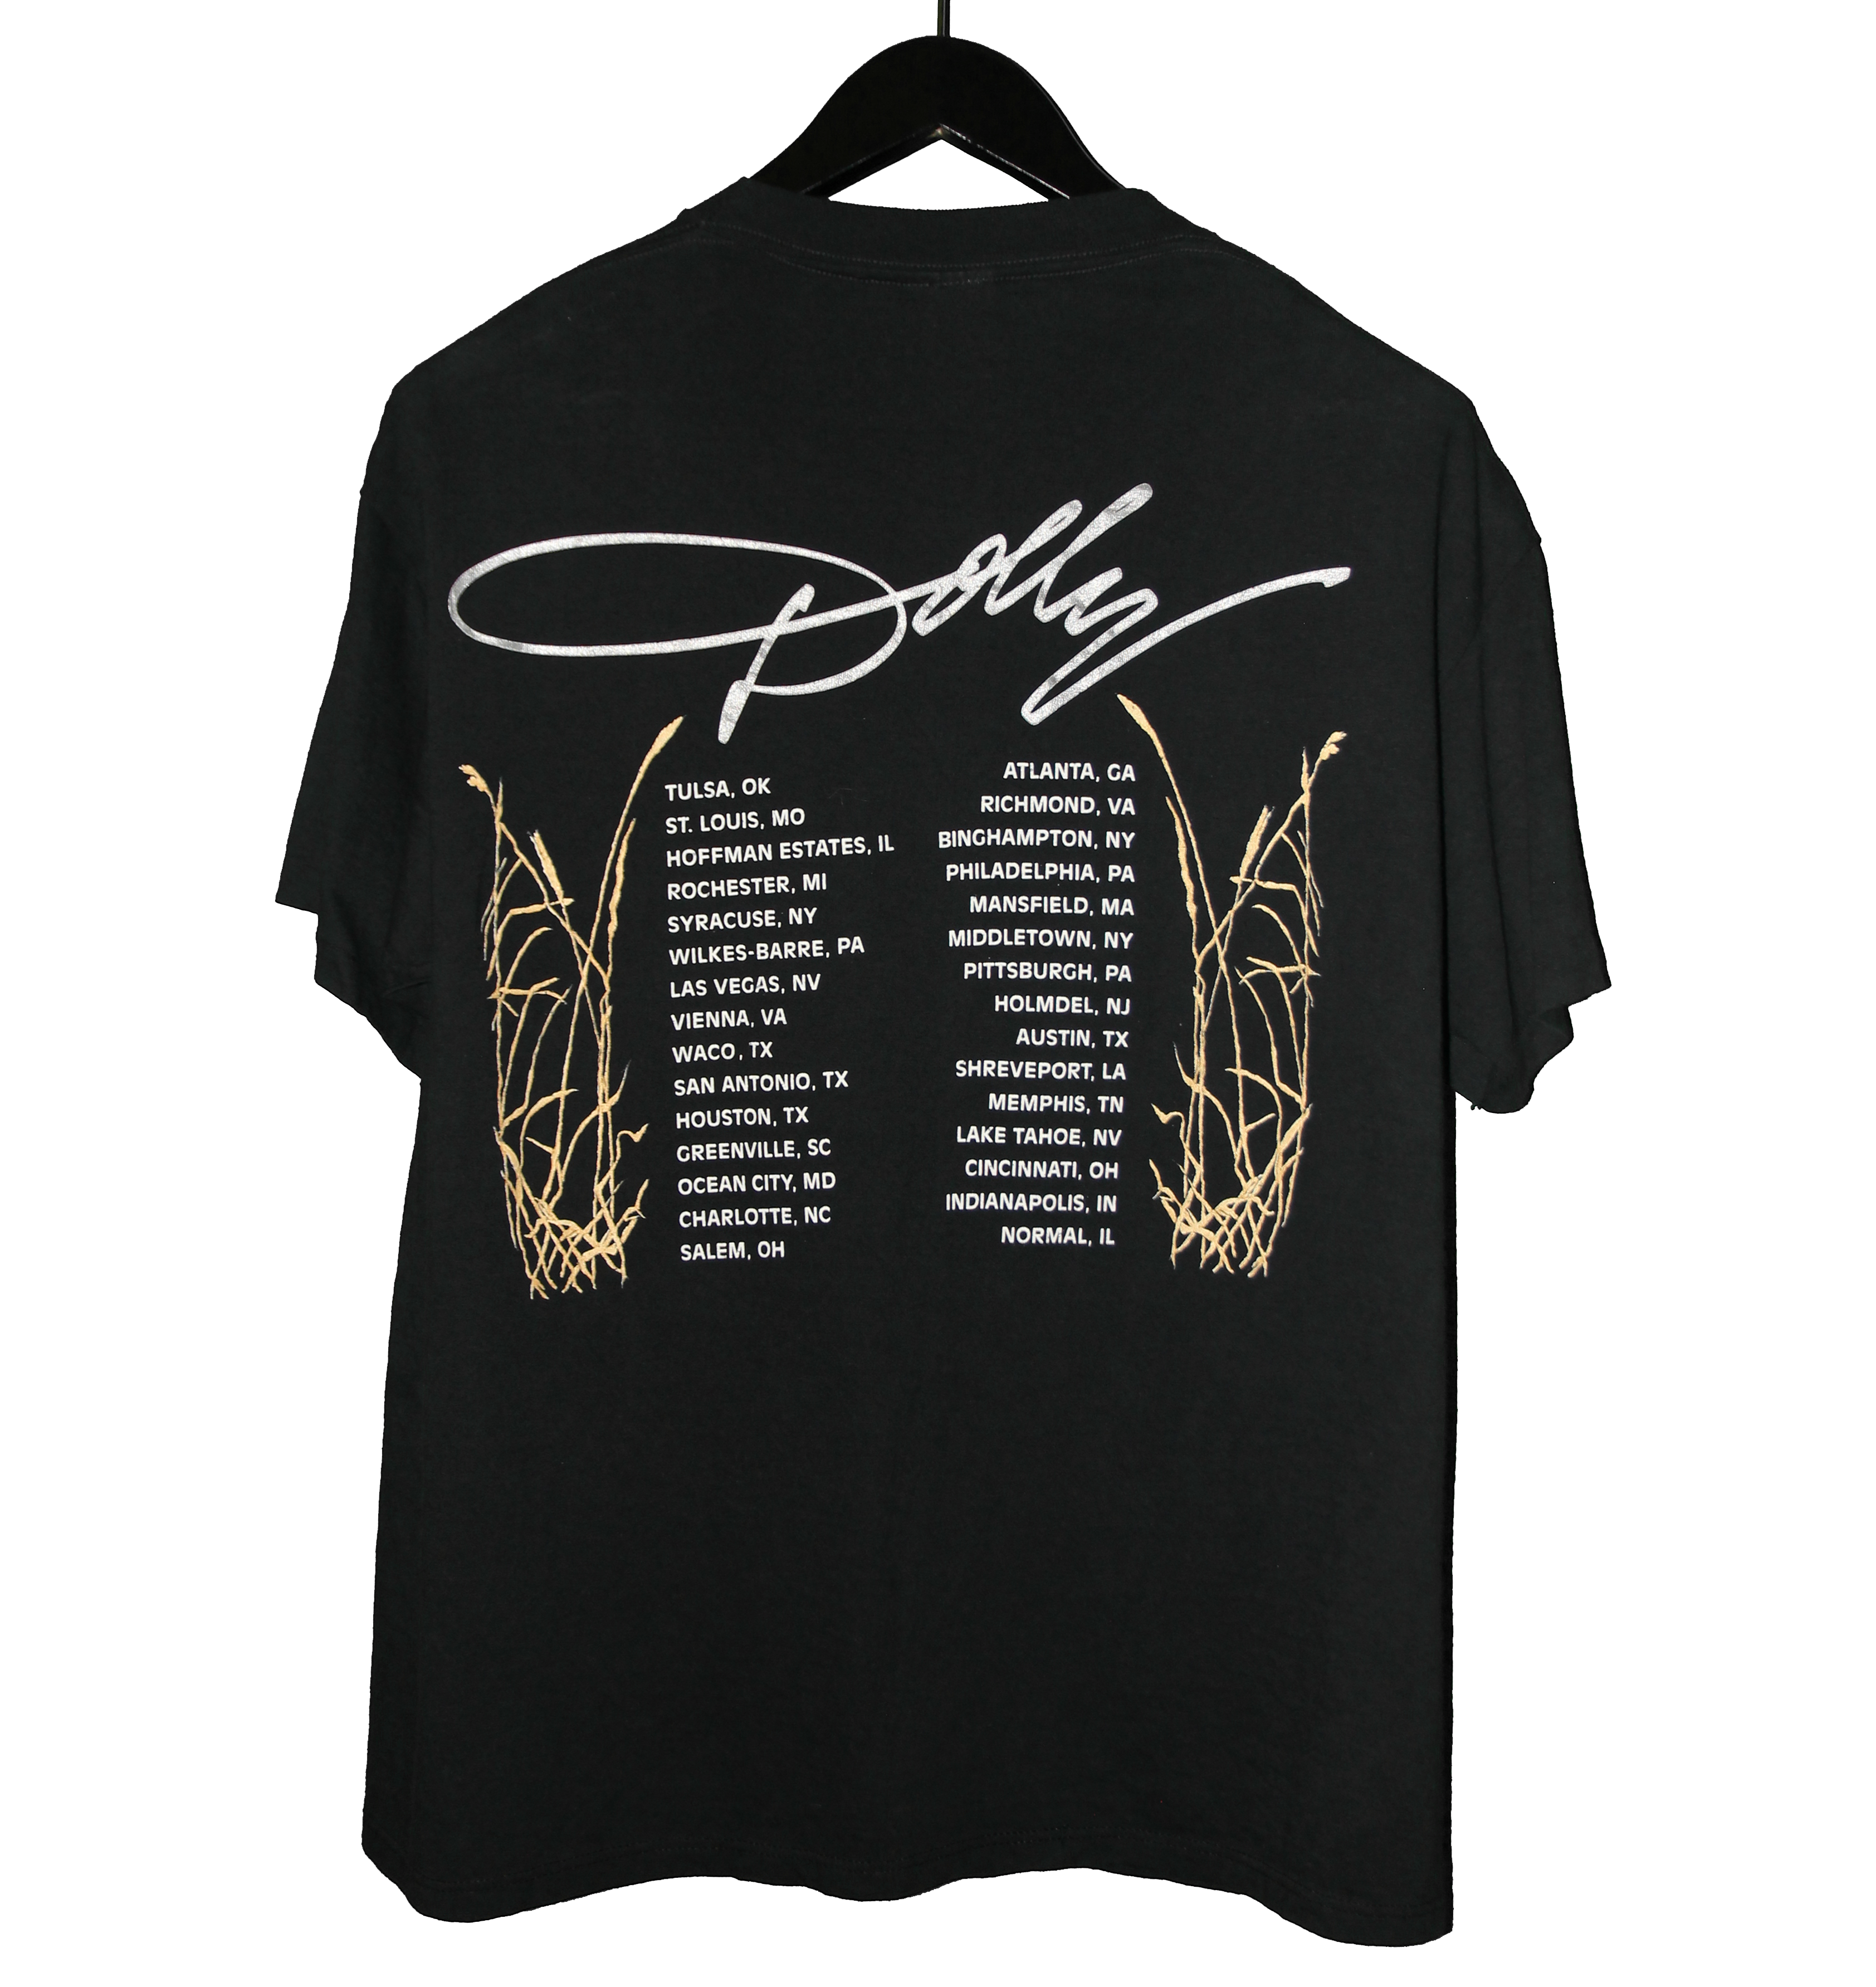 Dolly Parton 1992 US Tour Shirt